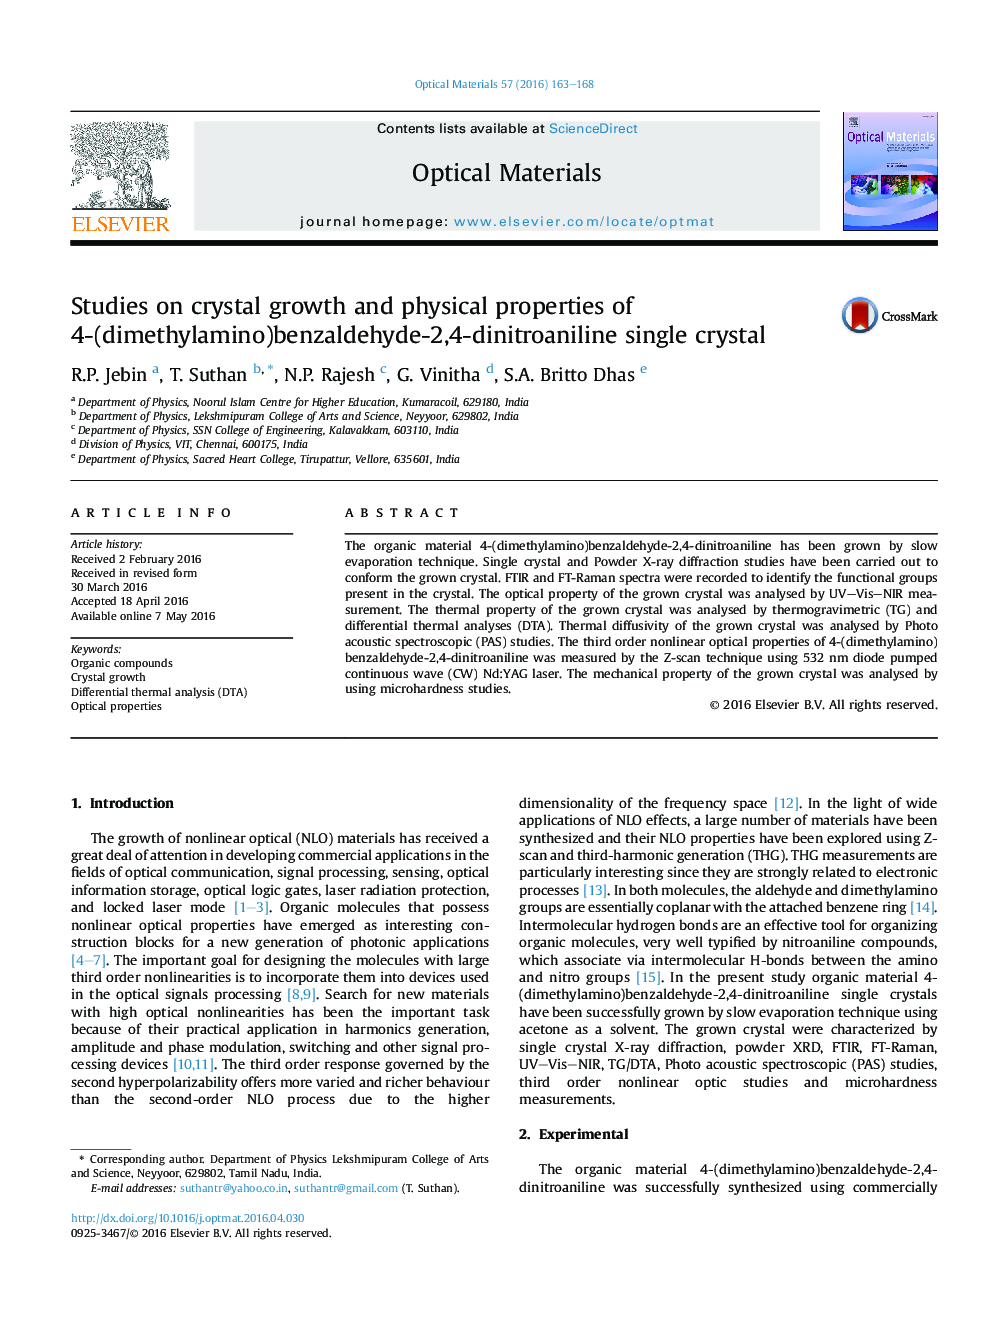 مطالعات بر روی رشد کریستال و خواص فیزیکی کریستال 4- (دی متیل آمینو) بنزالدهید-2،4-دینیتروانیلین 